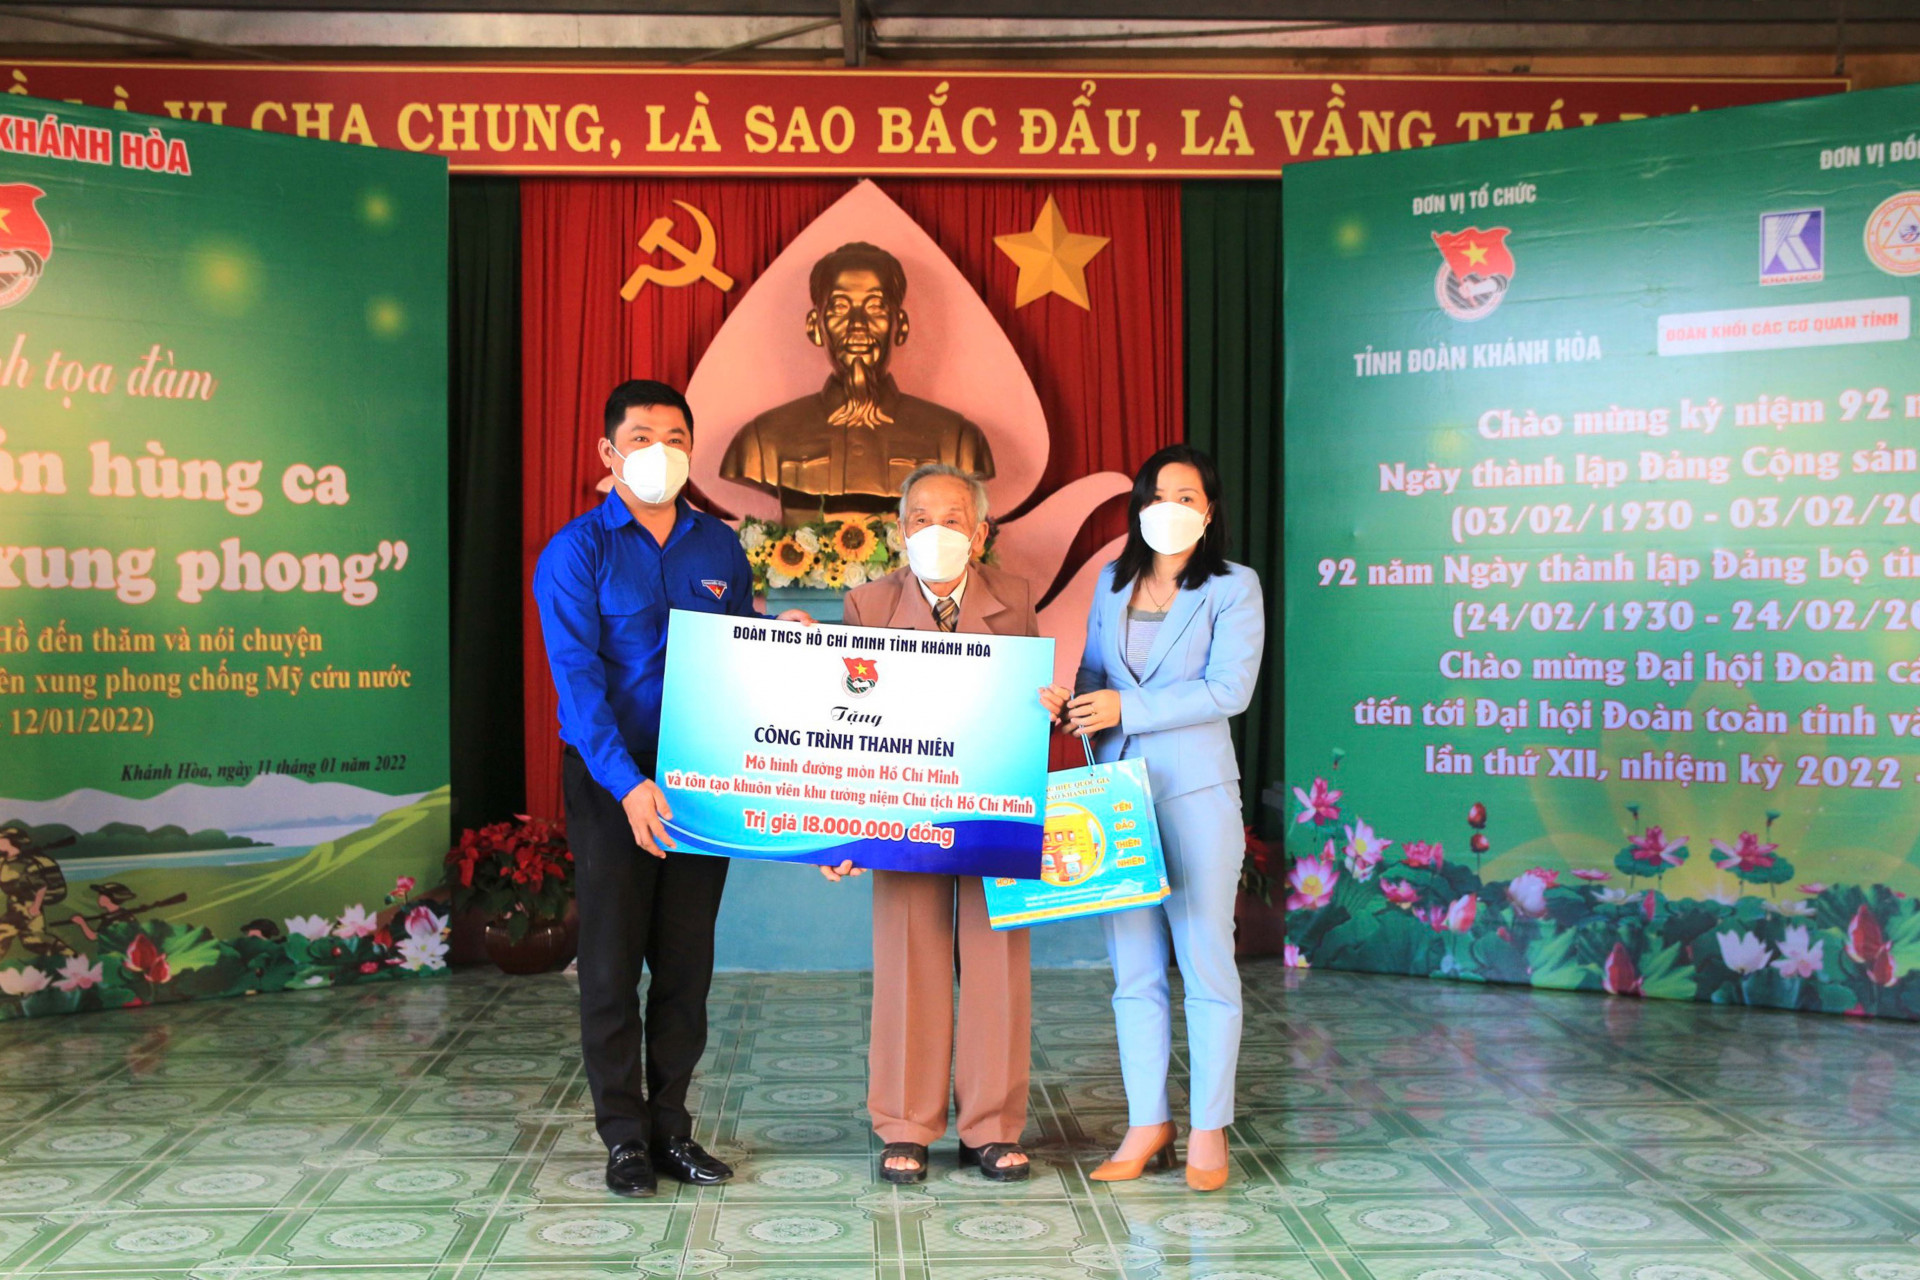 Các đại biểu trao tặng công trình thanh niên Mô hình đường mòn Hồ Chí Minh và tôn tạo khuôn viên Khu tưởng niệm Chủ tịch Hồ Chí Minh cho gia đình ông Bùi Xuân Phước